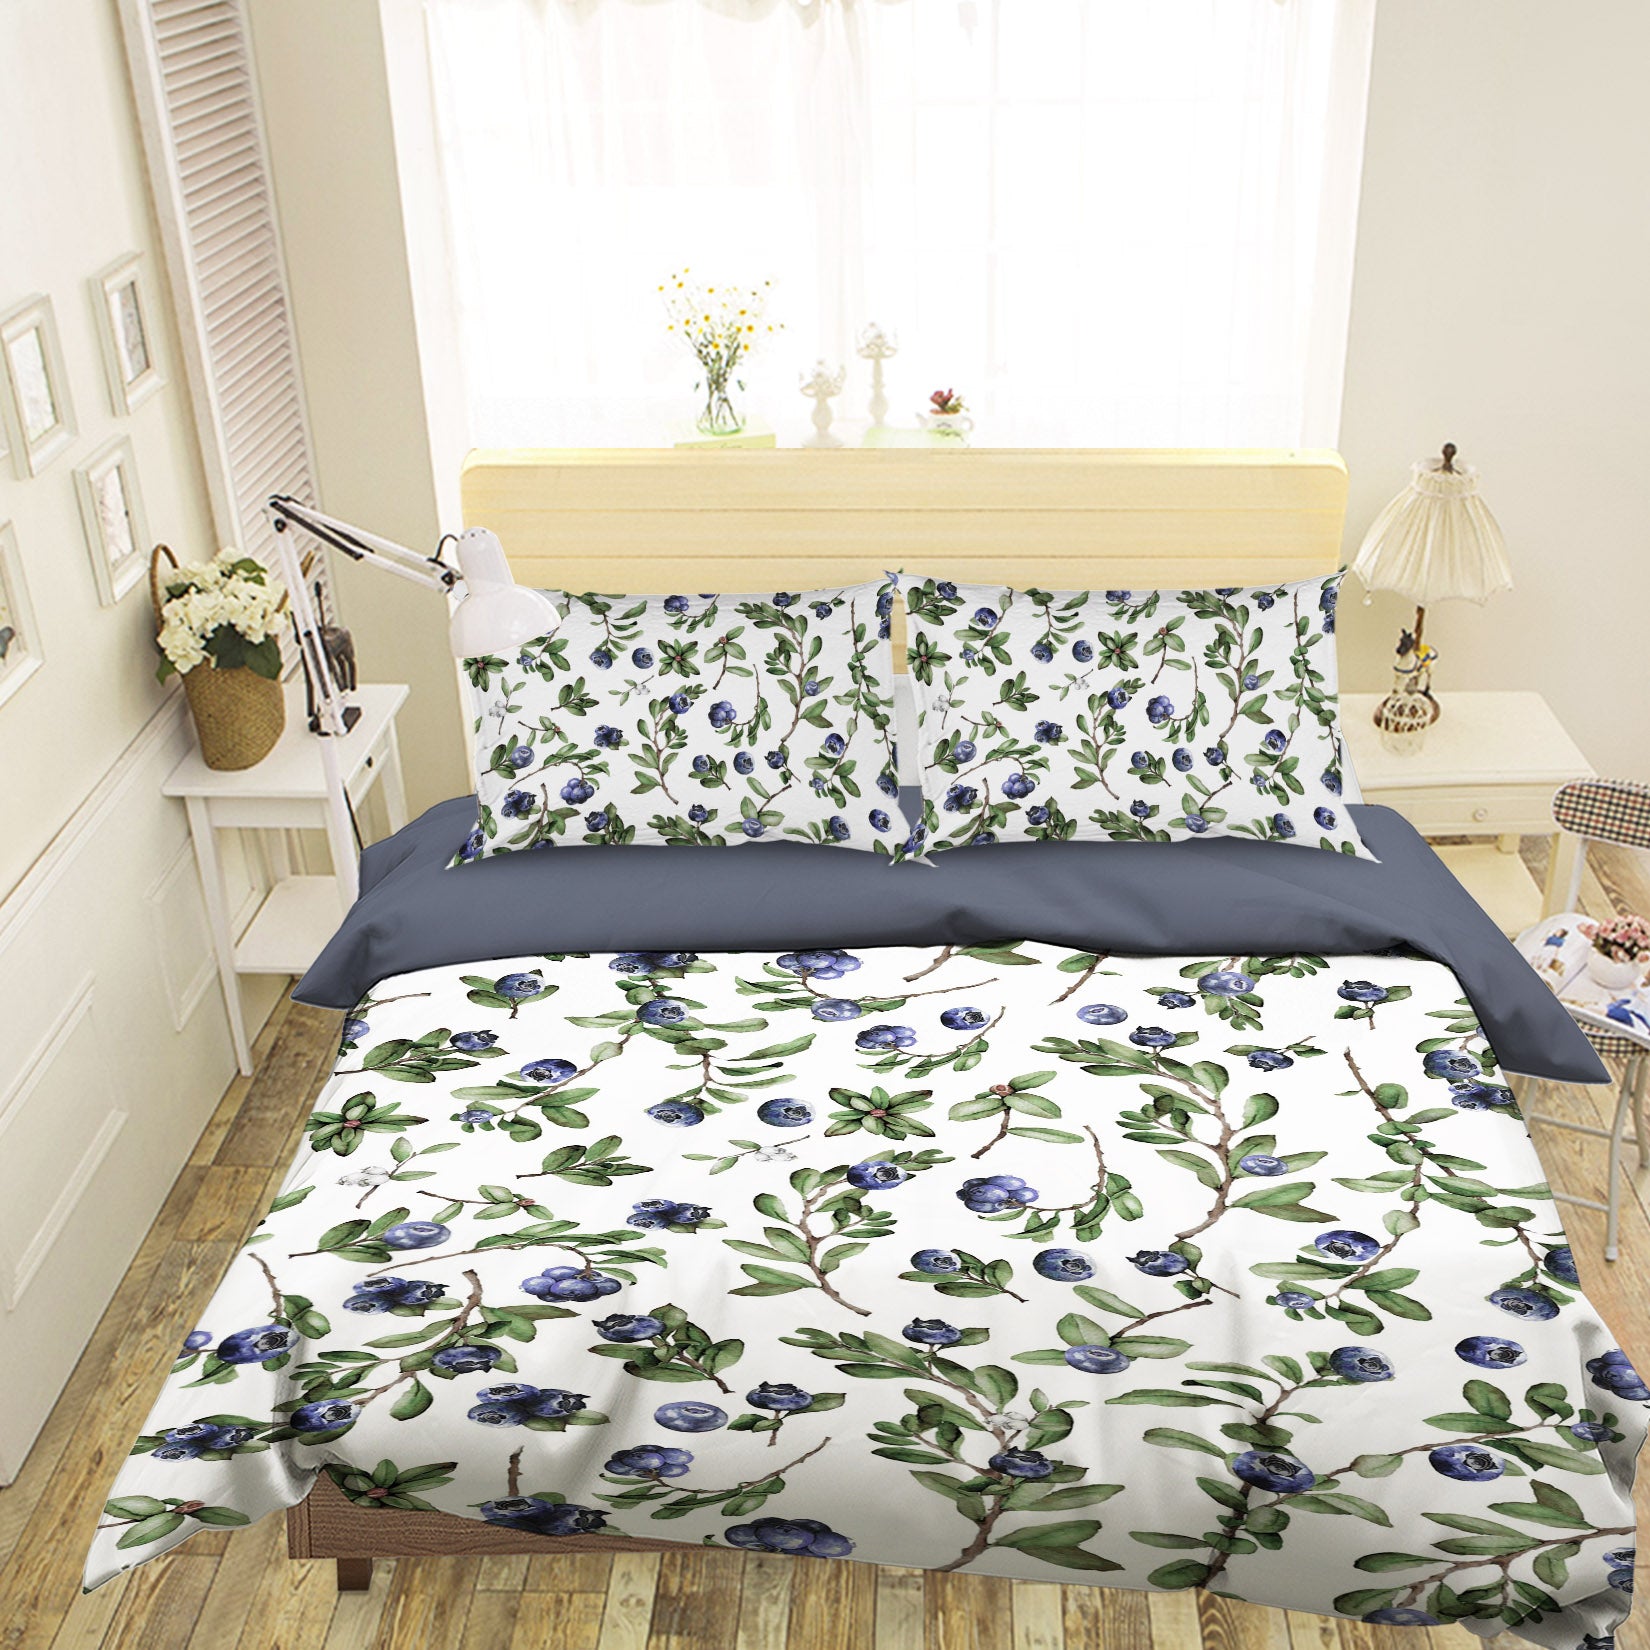 3D Blueberry Pattern 18218 Uta Naumann Bedding Bed Pillowcases Quilt